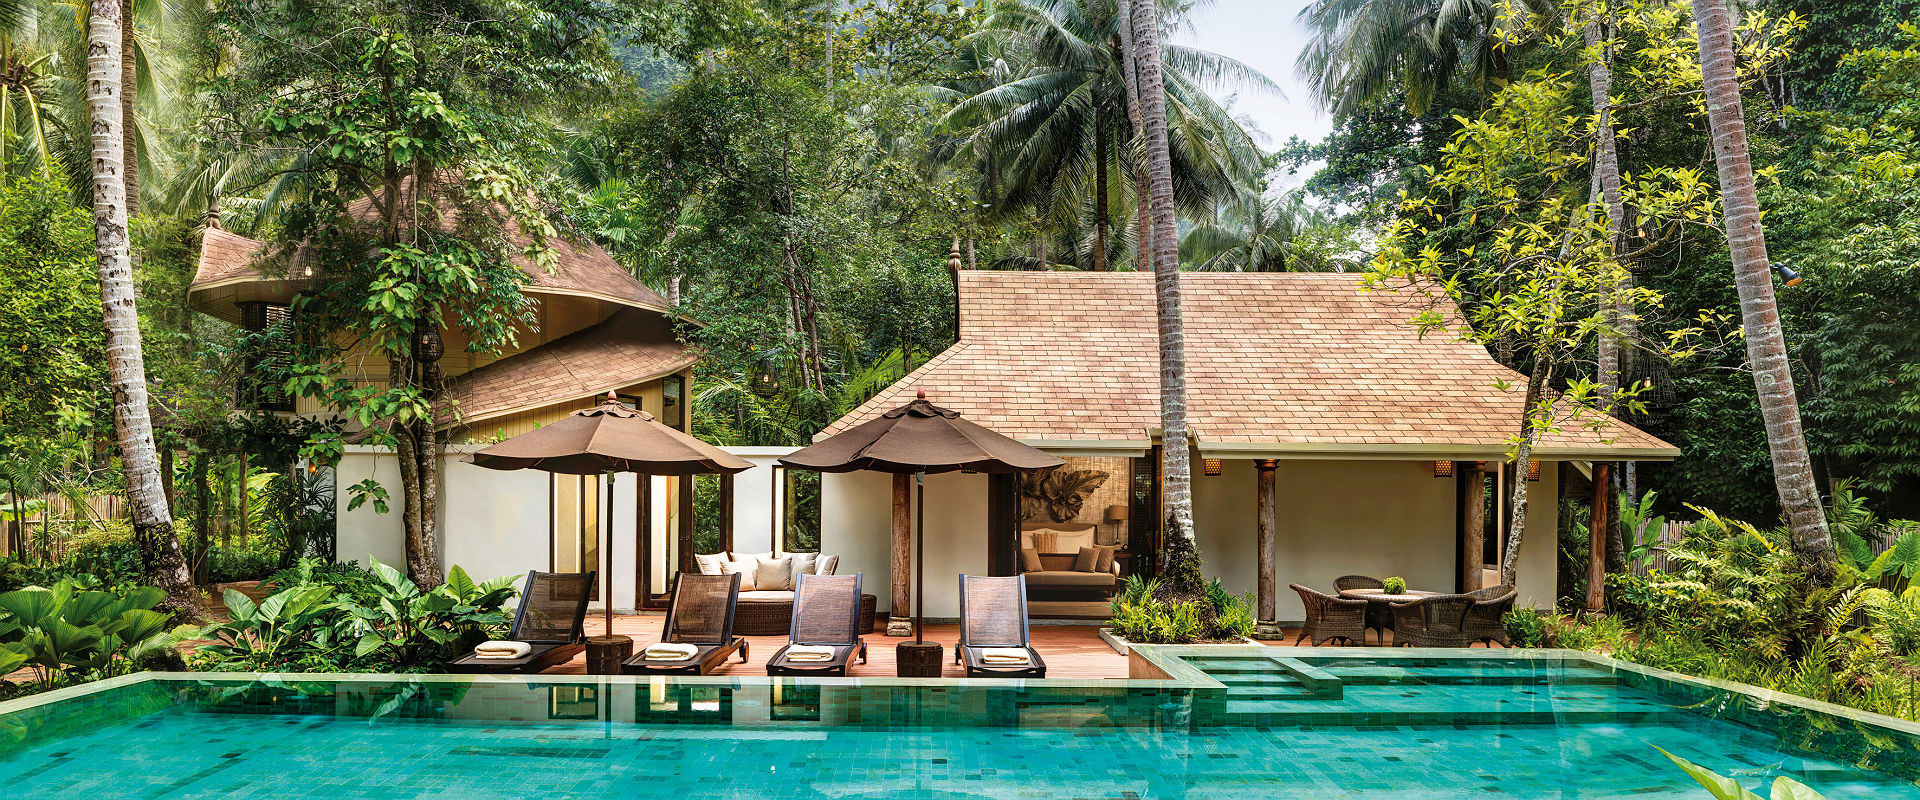 Rayavadee - Family Villa exterieur avec piscine et palmiers